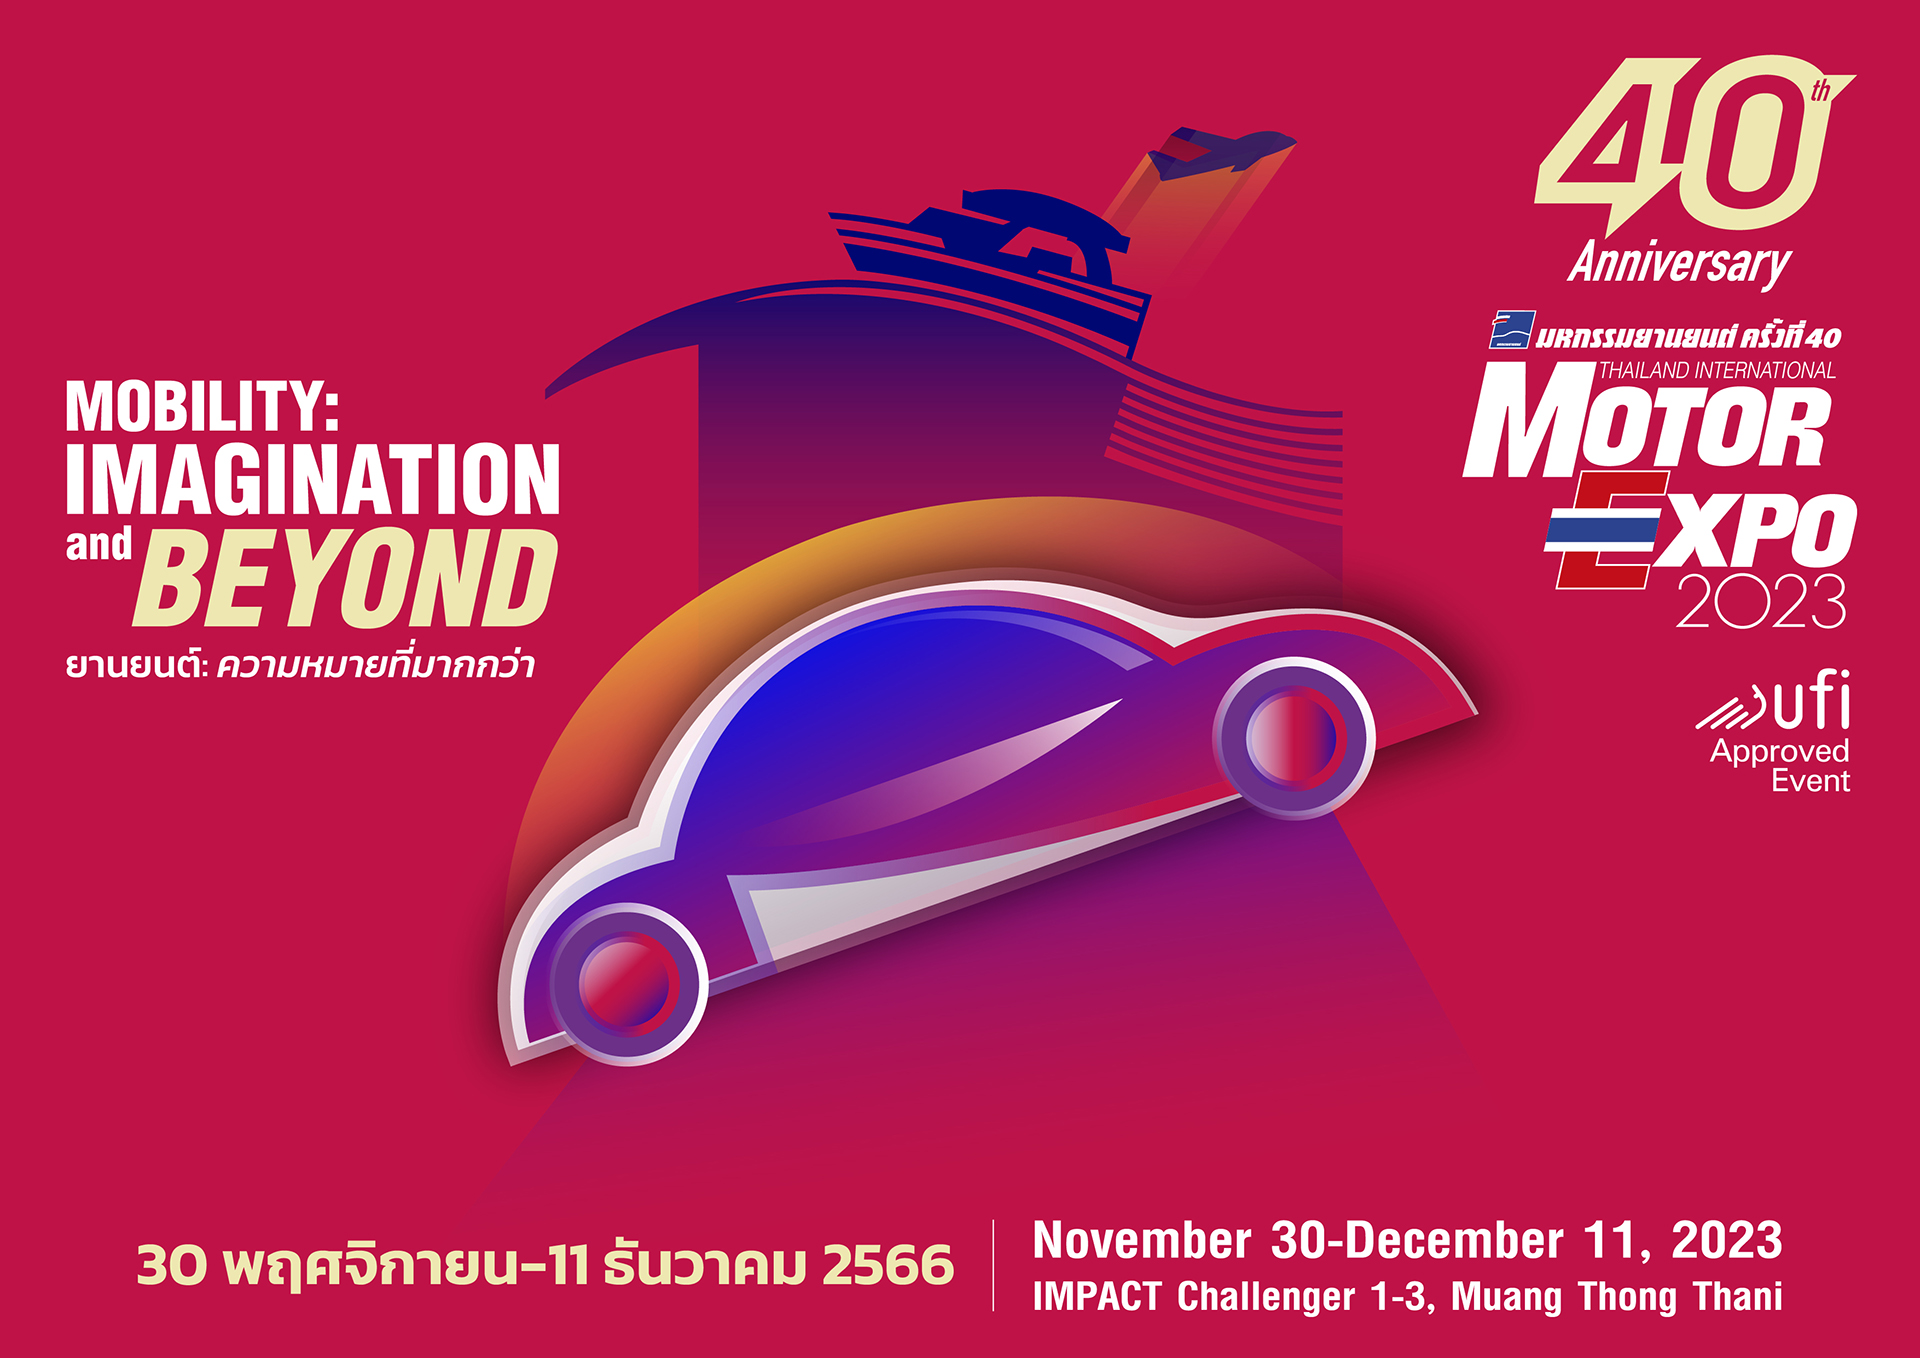 MOTOR EXPO 2023 รวมยานยนต์ครบวงจร รถยนต์ 40 แบรนด์ จักรยานยนต์ 23 แบรนด์